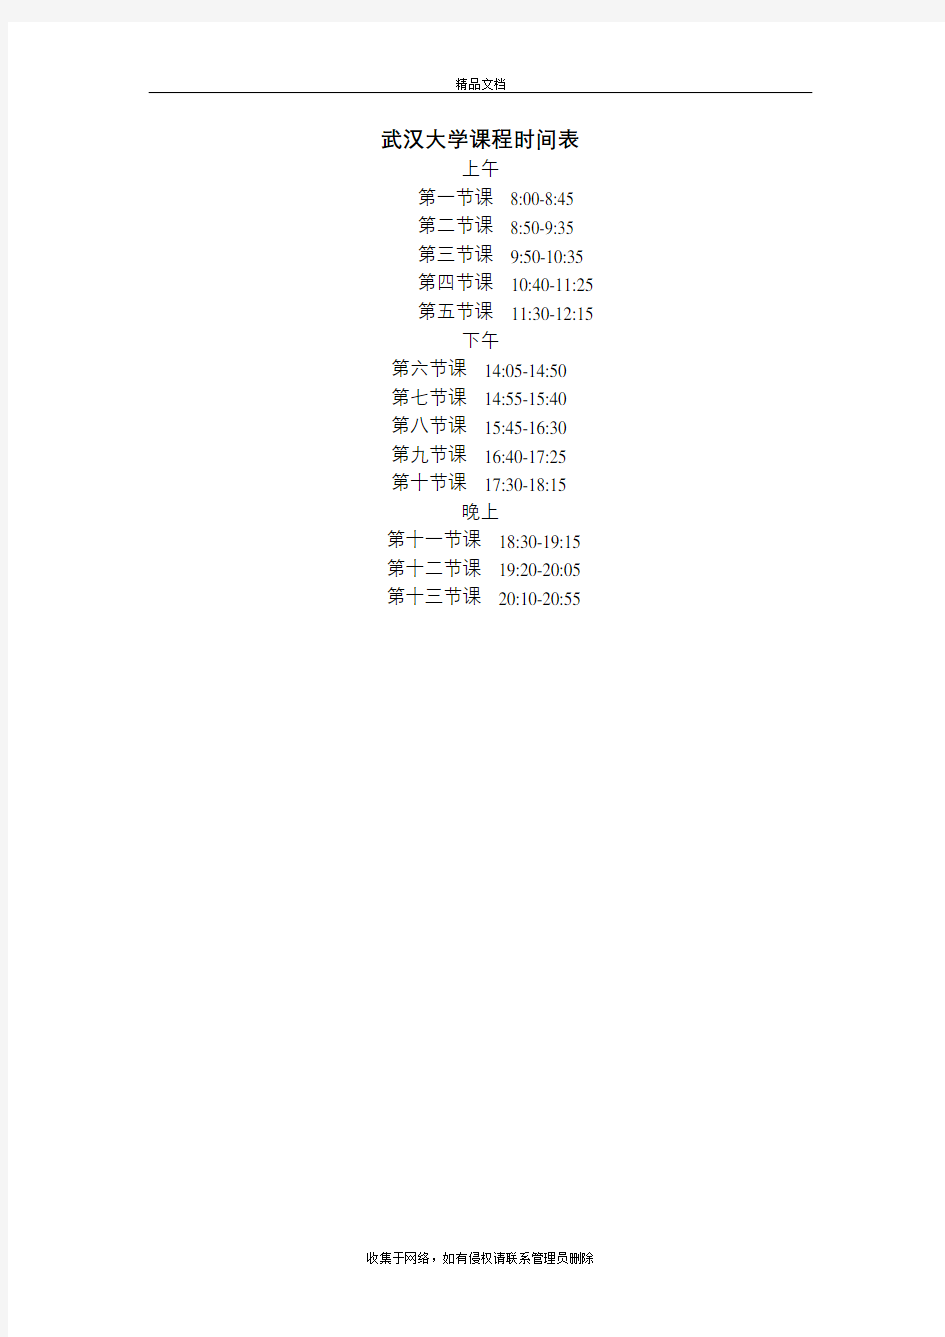 武汉大学课程时间表教程文件